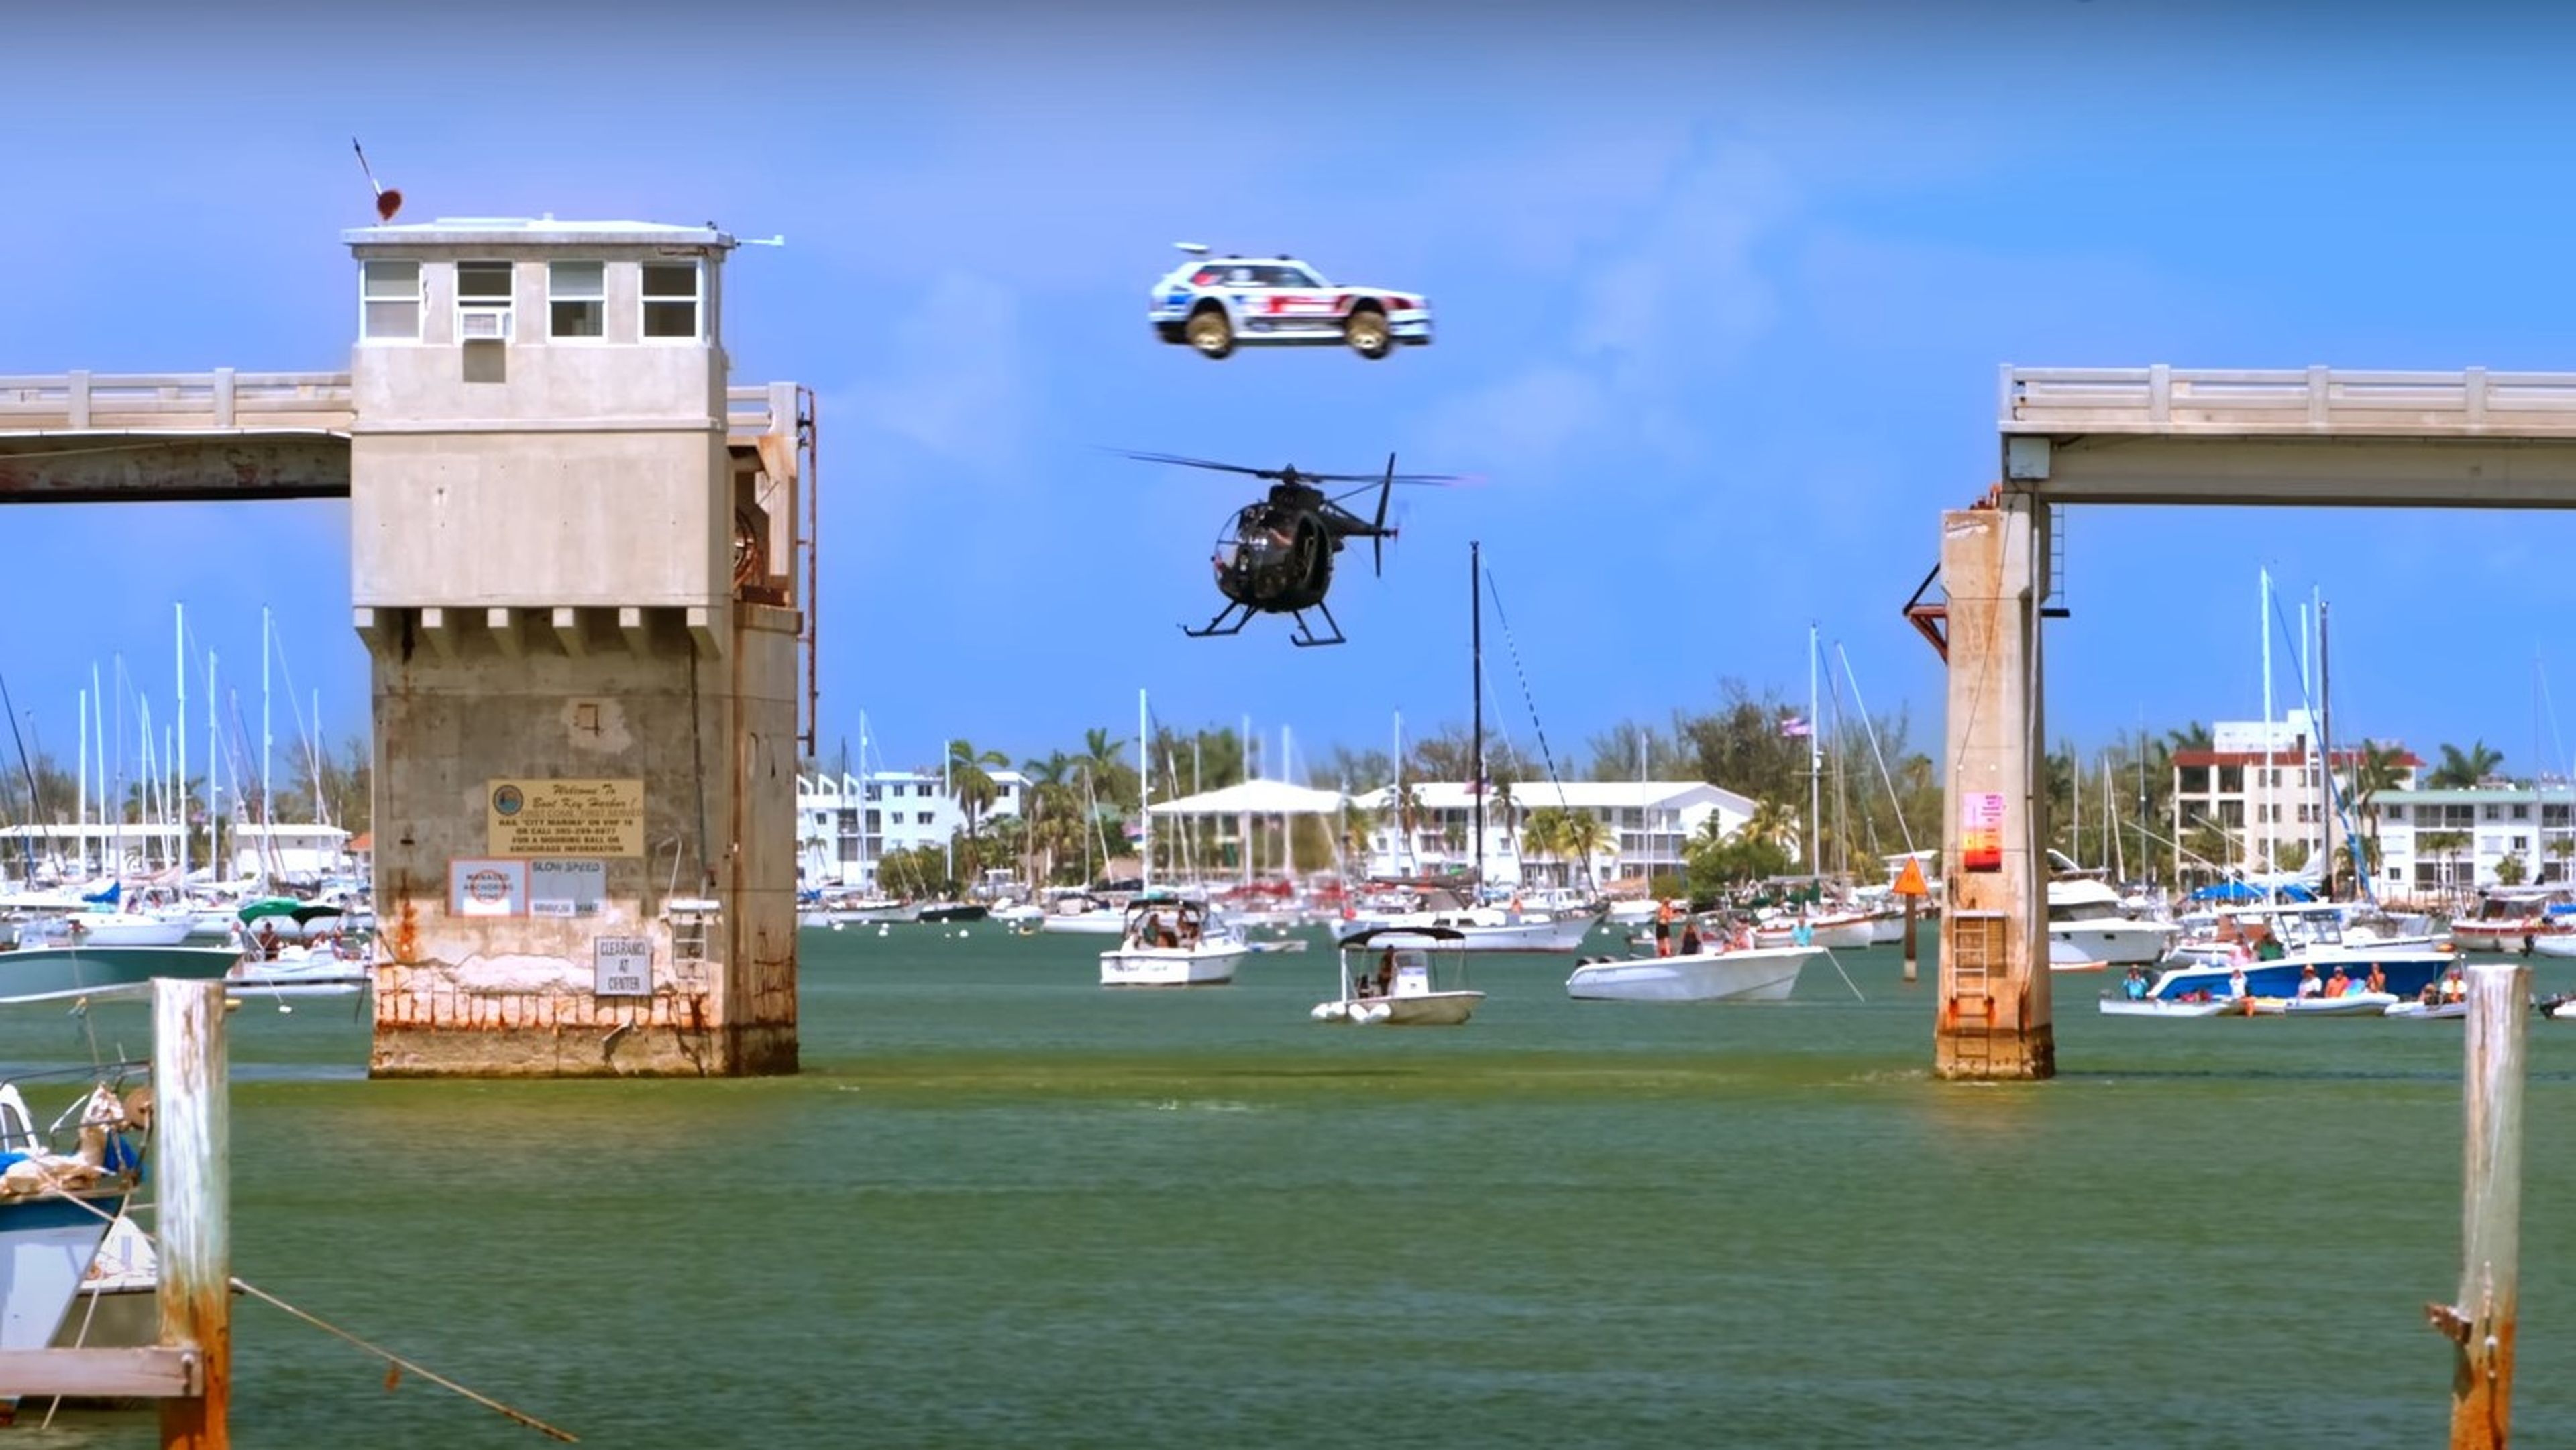 Momento en el que Pastrana salta sobre un helicóptero en un puente.